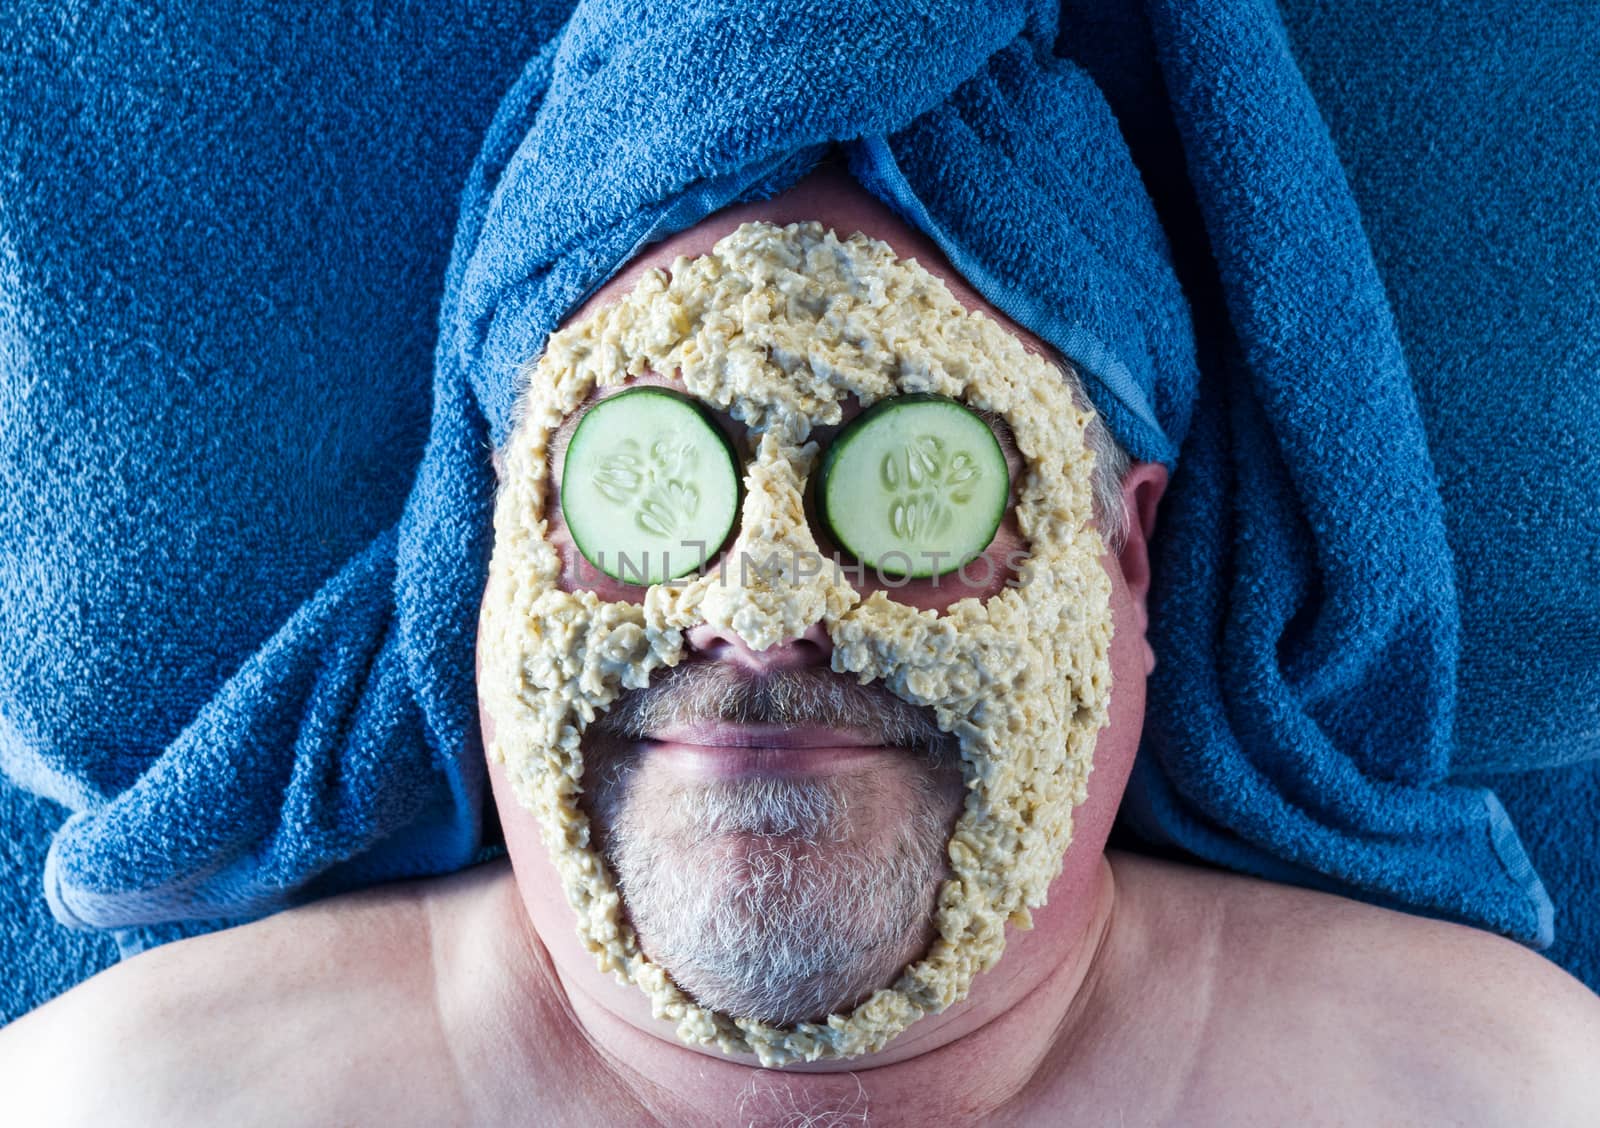 Man receiving facial at the spa